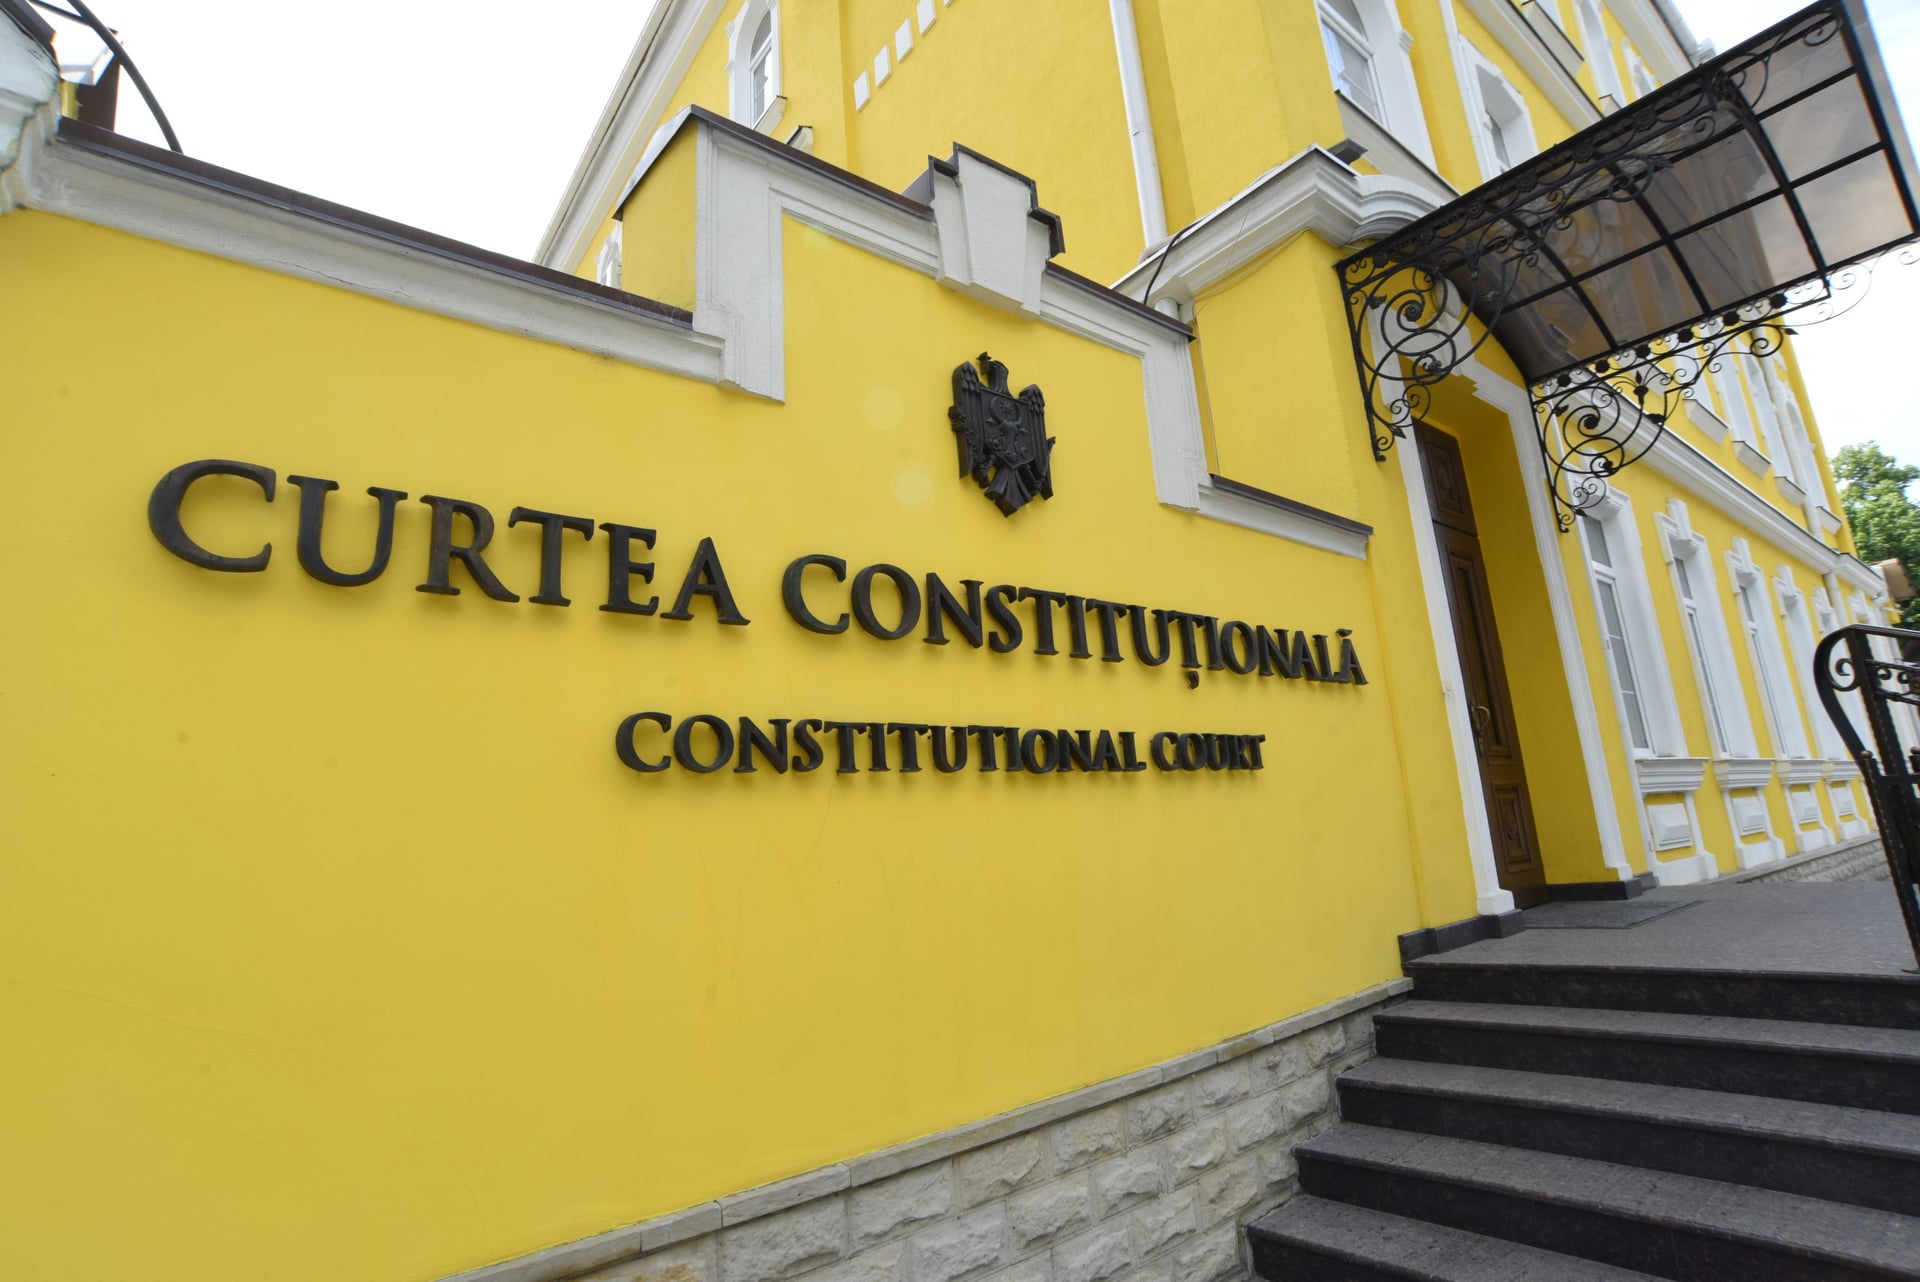 Curtea Constituțională a dispus suspendarea unei prevederi din Codul electoral